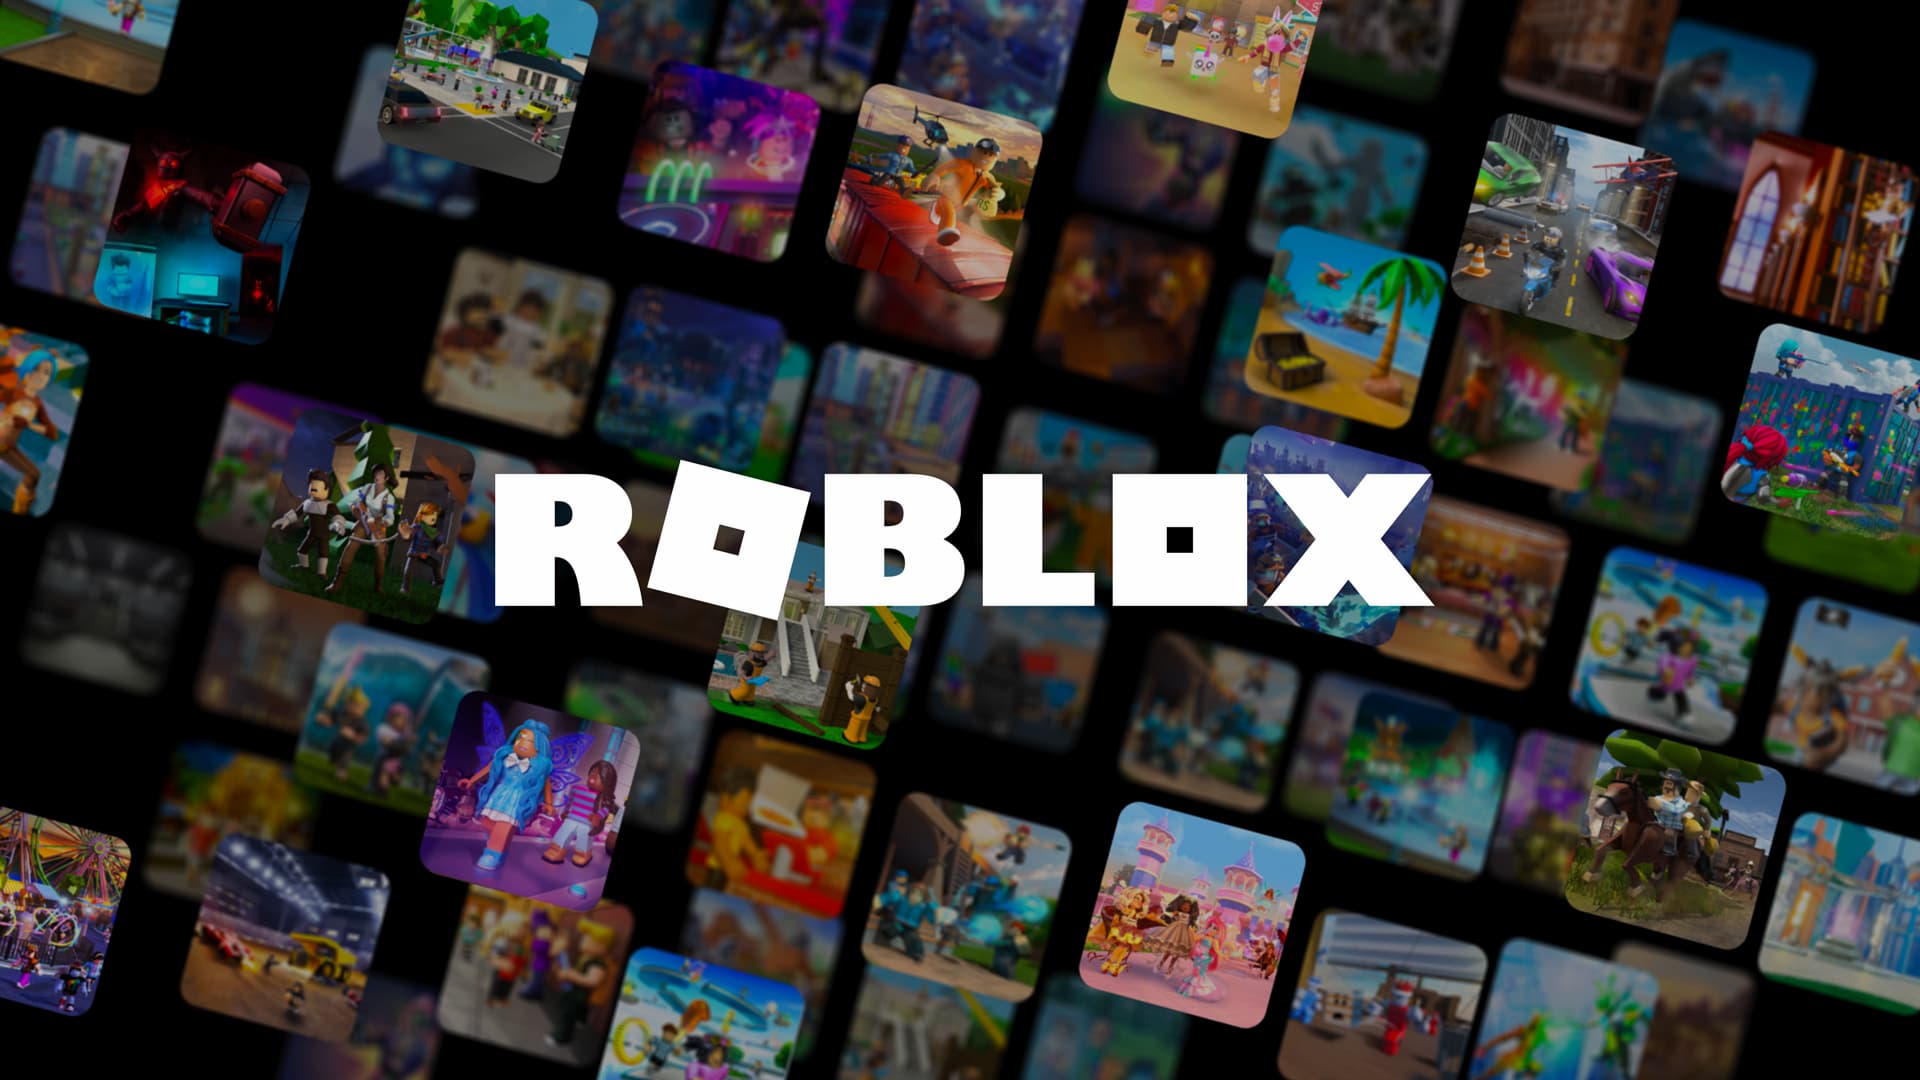 Roblox: veja a lista de códigos e resgate itens de graça